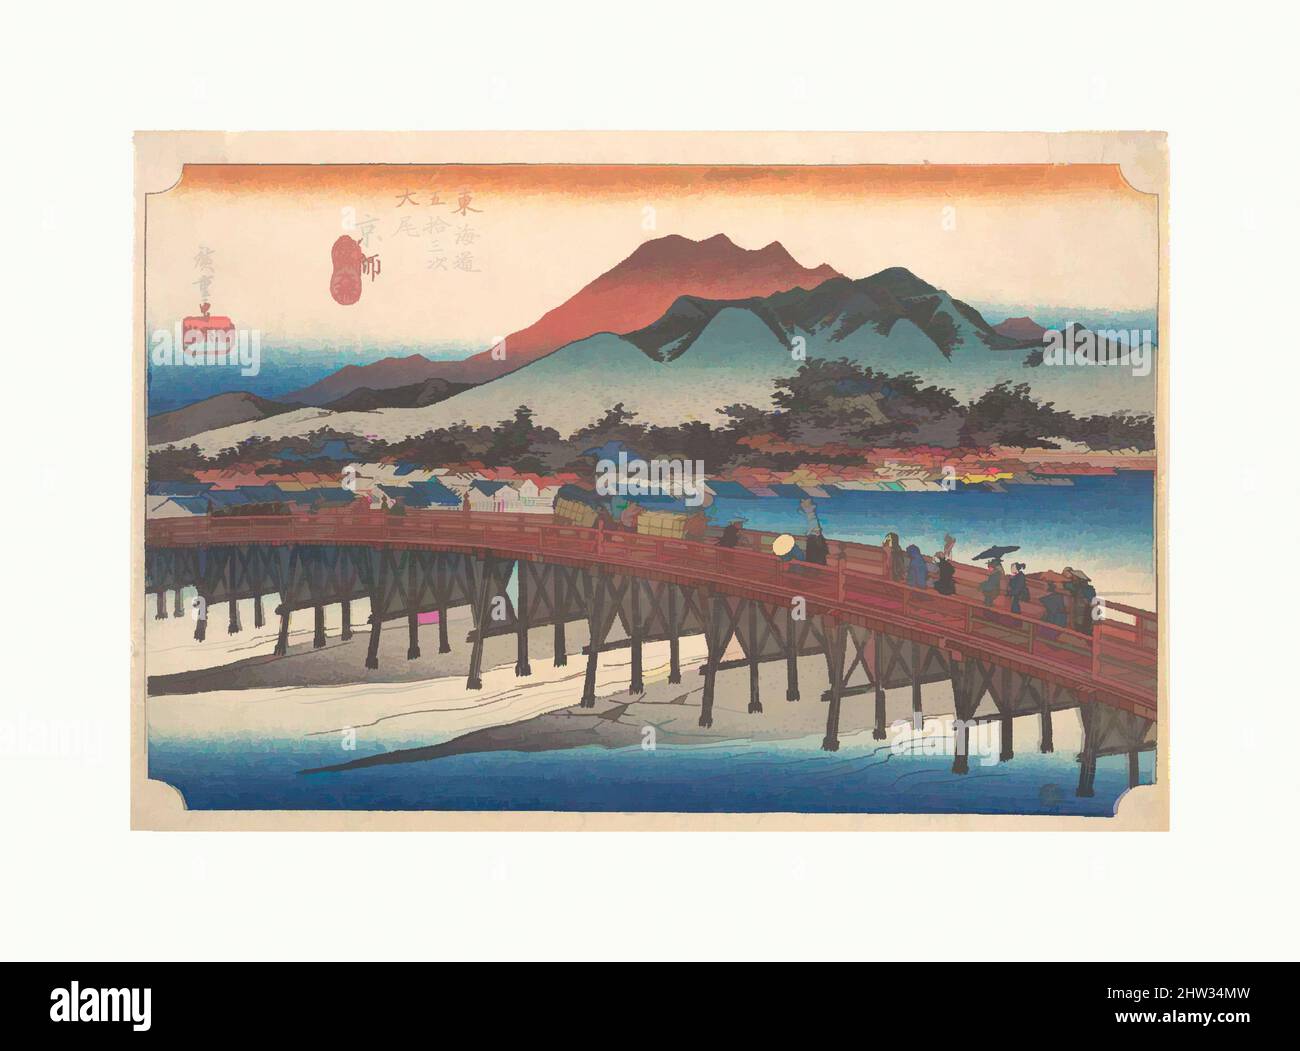 Arte ispirata da 東海道五十三次之内 大尾 京師 三条大橋, Kyoto, Sanjo Ohashi, periodo Edo (1615-1868), ca. 1833–34, Giappone, stampa a blocchi di legno policromi; inchiostro e colore su carta, 9 3/5 x 14 1/16 pollici (24,4 x 35,7 cm), stampe, Utagawa Hiroshige (Giapponese, Tokyo (Edo) 1797–1858 Tokyo (Edo)), viaggiatori infine, opere classiche modernizzate da Artotop con un tuffo di modernità. Forme, colore e valore, impatto visivo accattivante sulle emozioni artistiche attraverso la libertà delle opere d'arte in modo contemporaneo. Un messaggio senza tempo che persegue una nuova direzione selvaggiamente creativa. Artisti che si rivolgono al supporto digitale e creano l'NFT Artotop Foto Stock